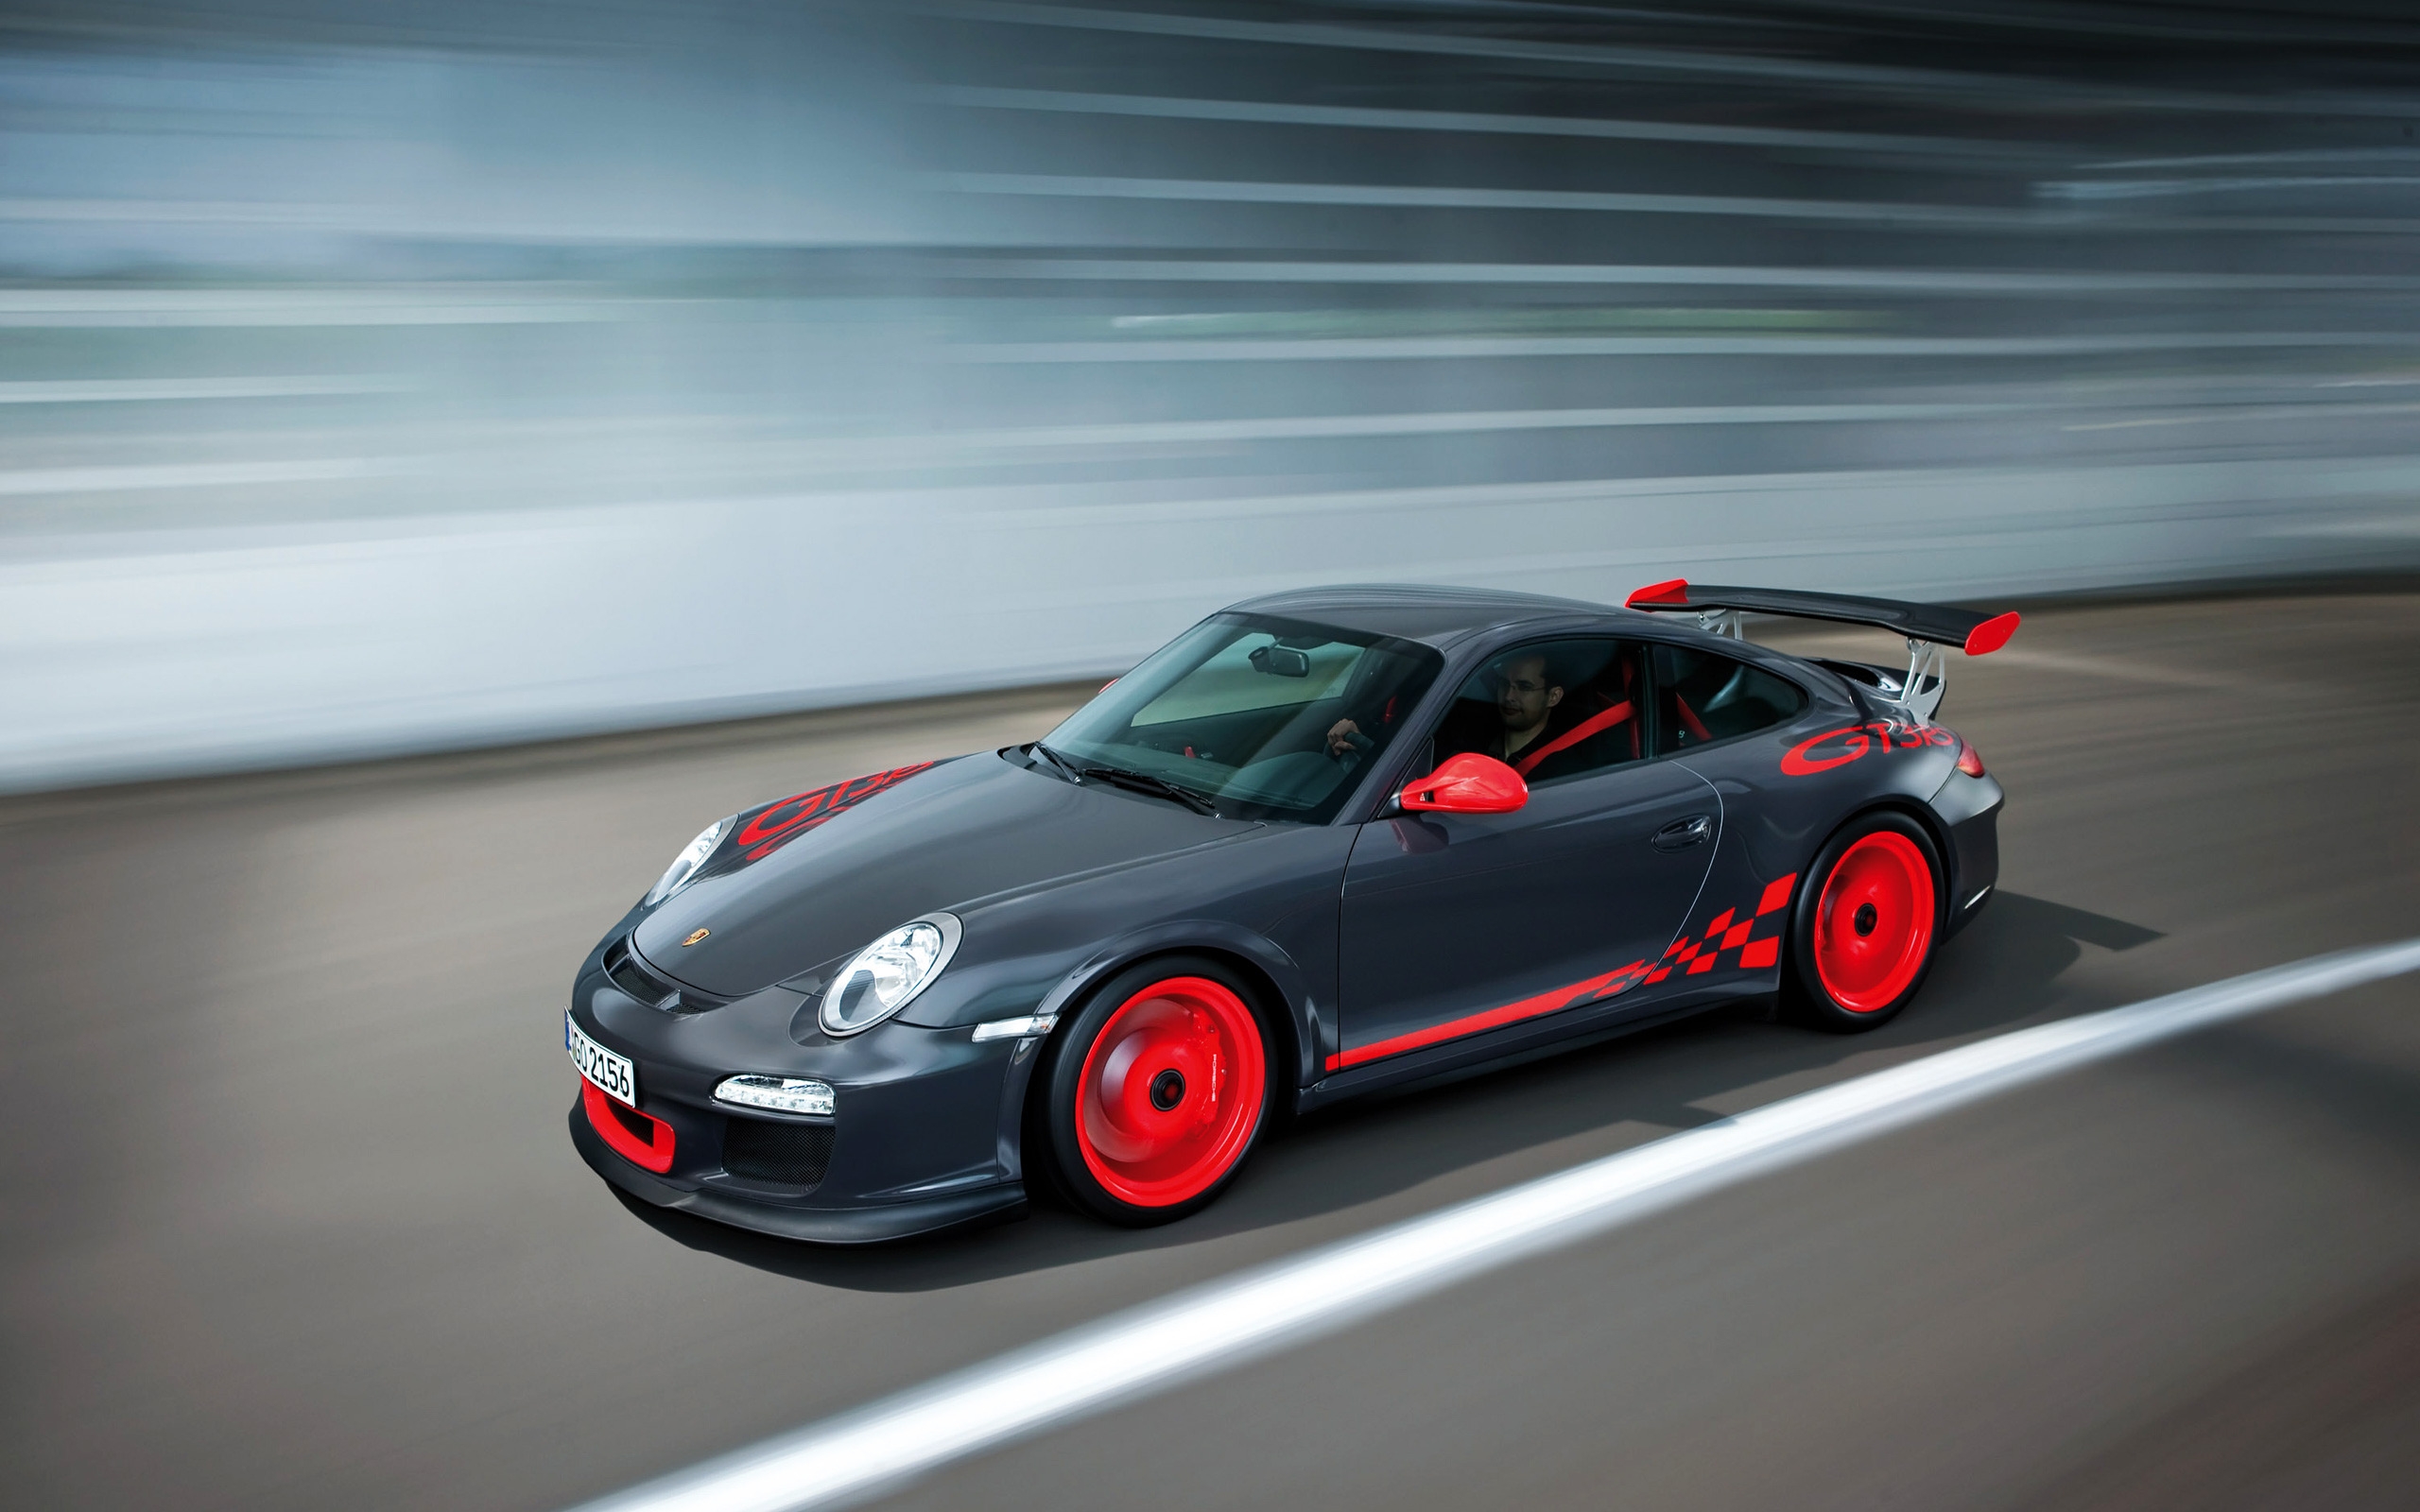 Porsche 911 GT3 RS for 2560 x 1600 widescreen resolution